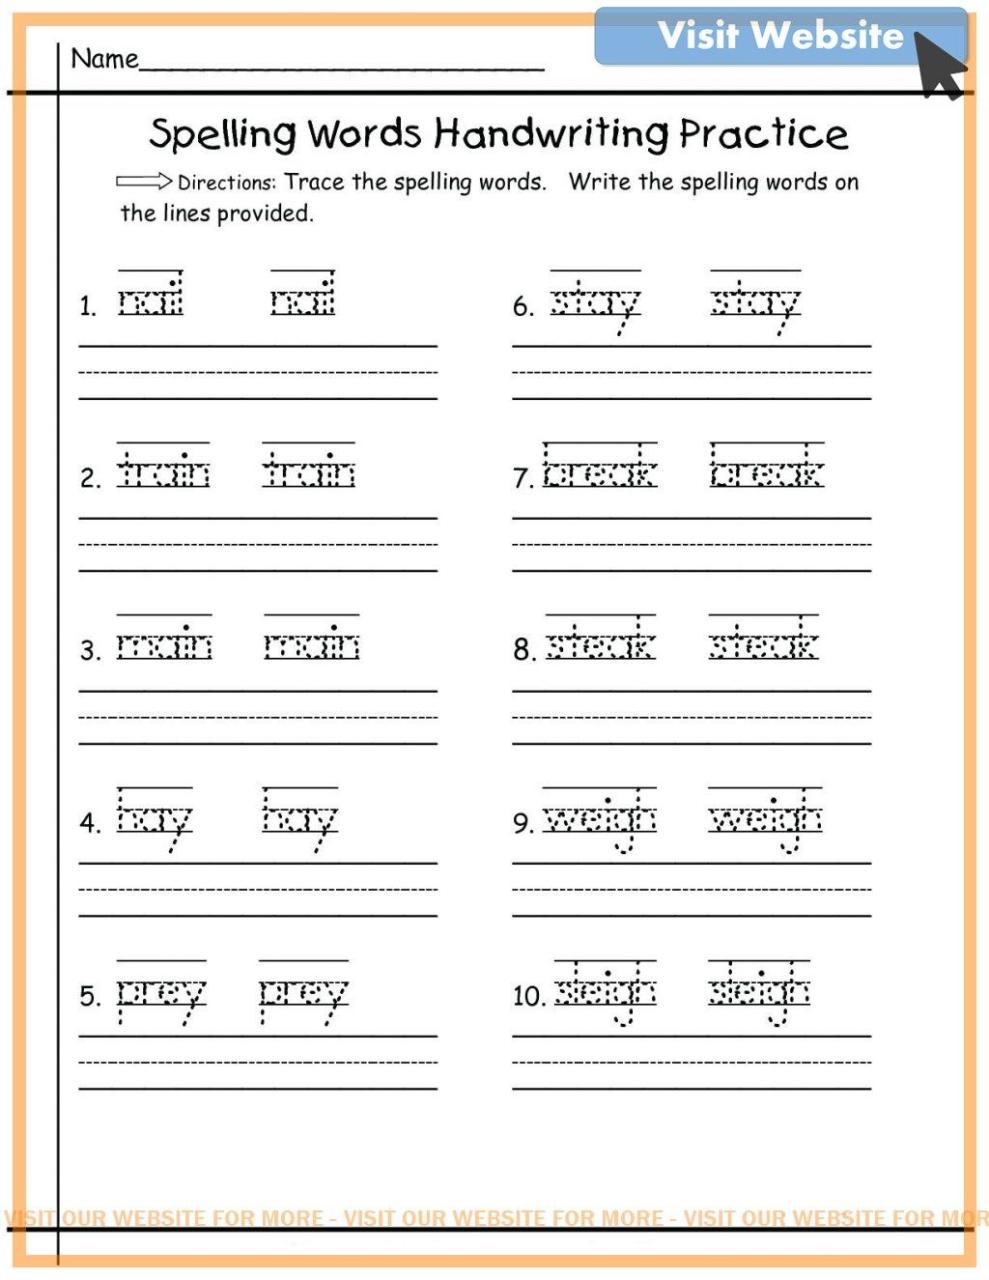 Spelling Practice Worksheets For Kindergarten